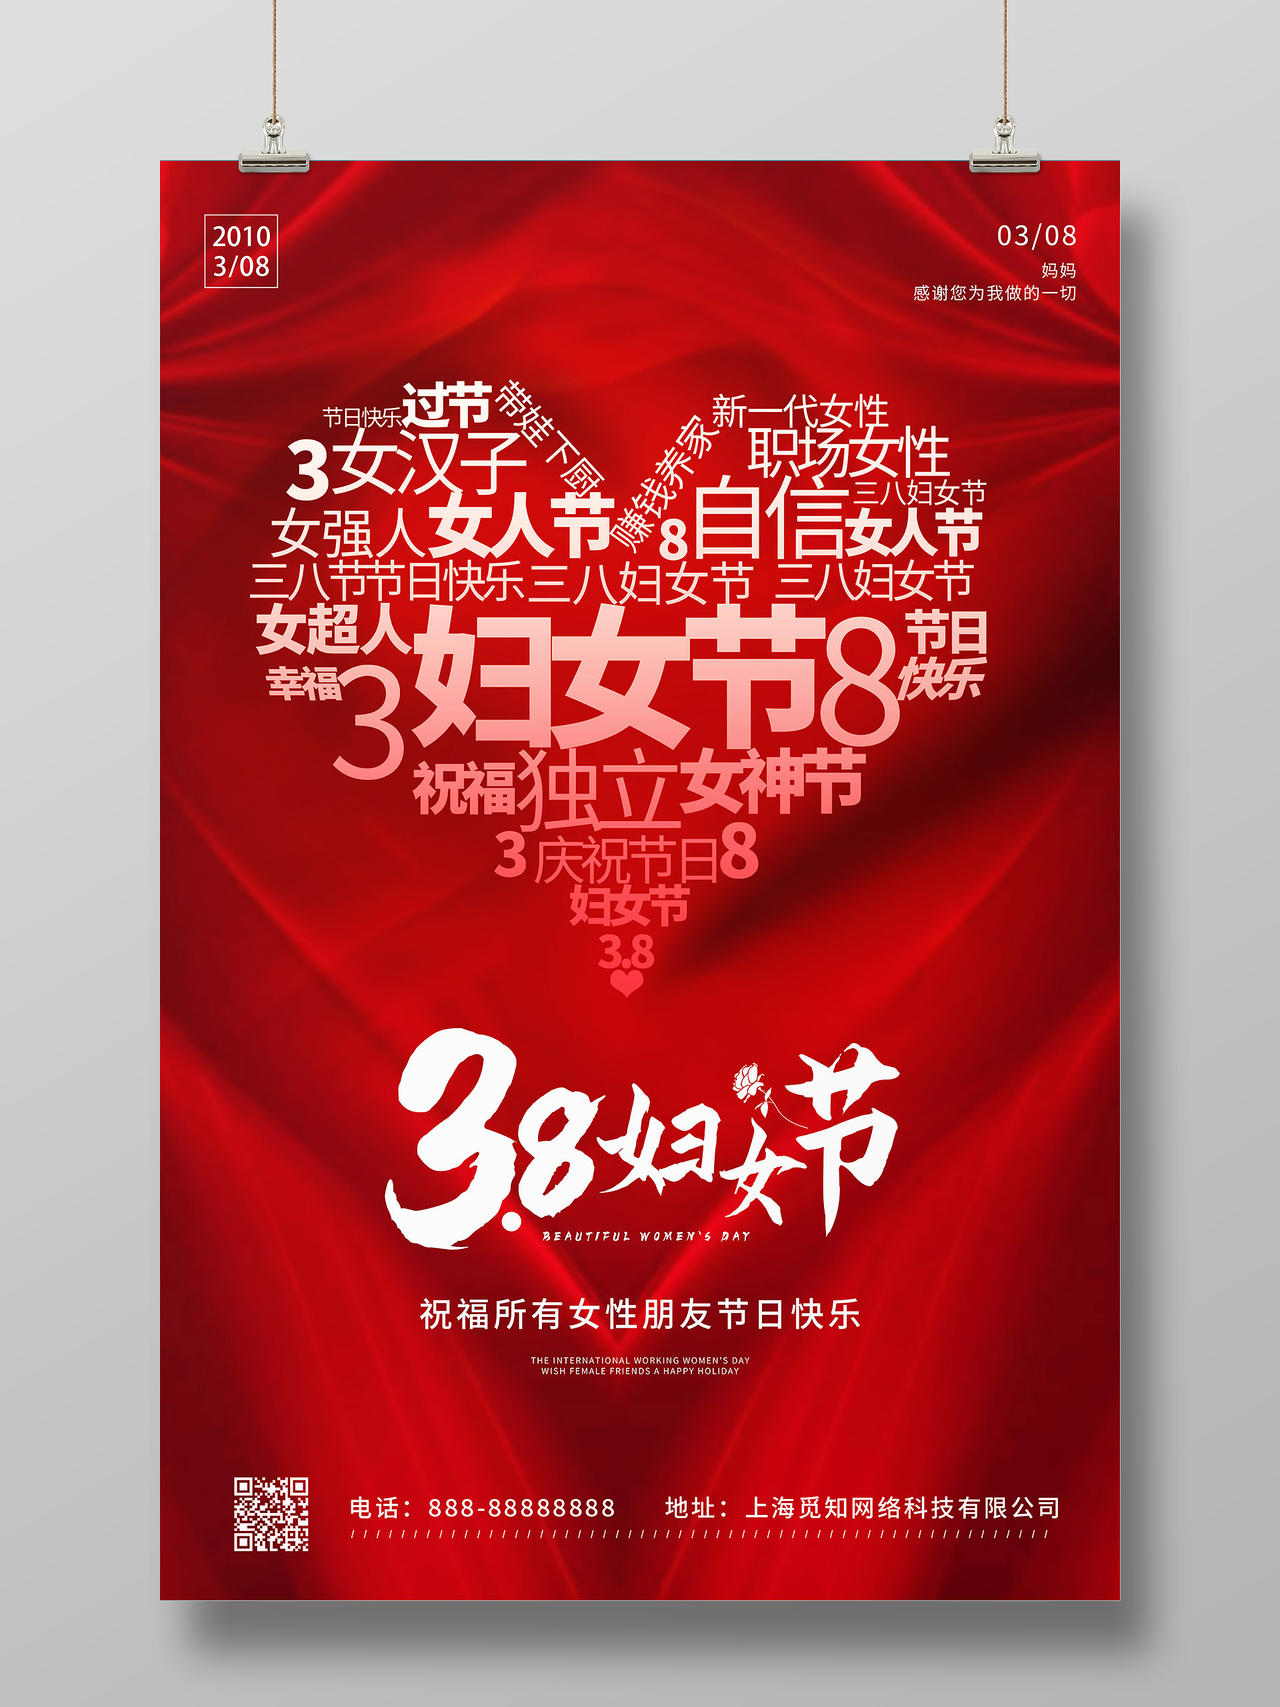 红色创意心形文字标题38妇女节宣传海报